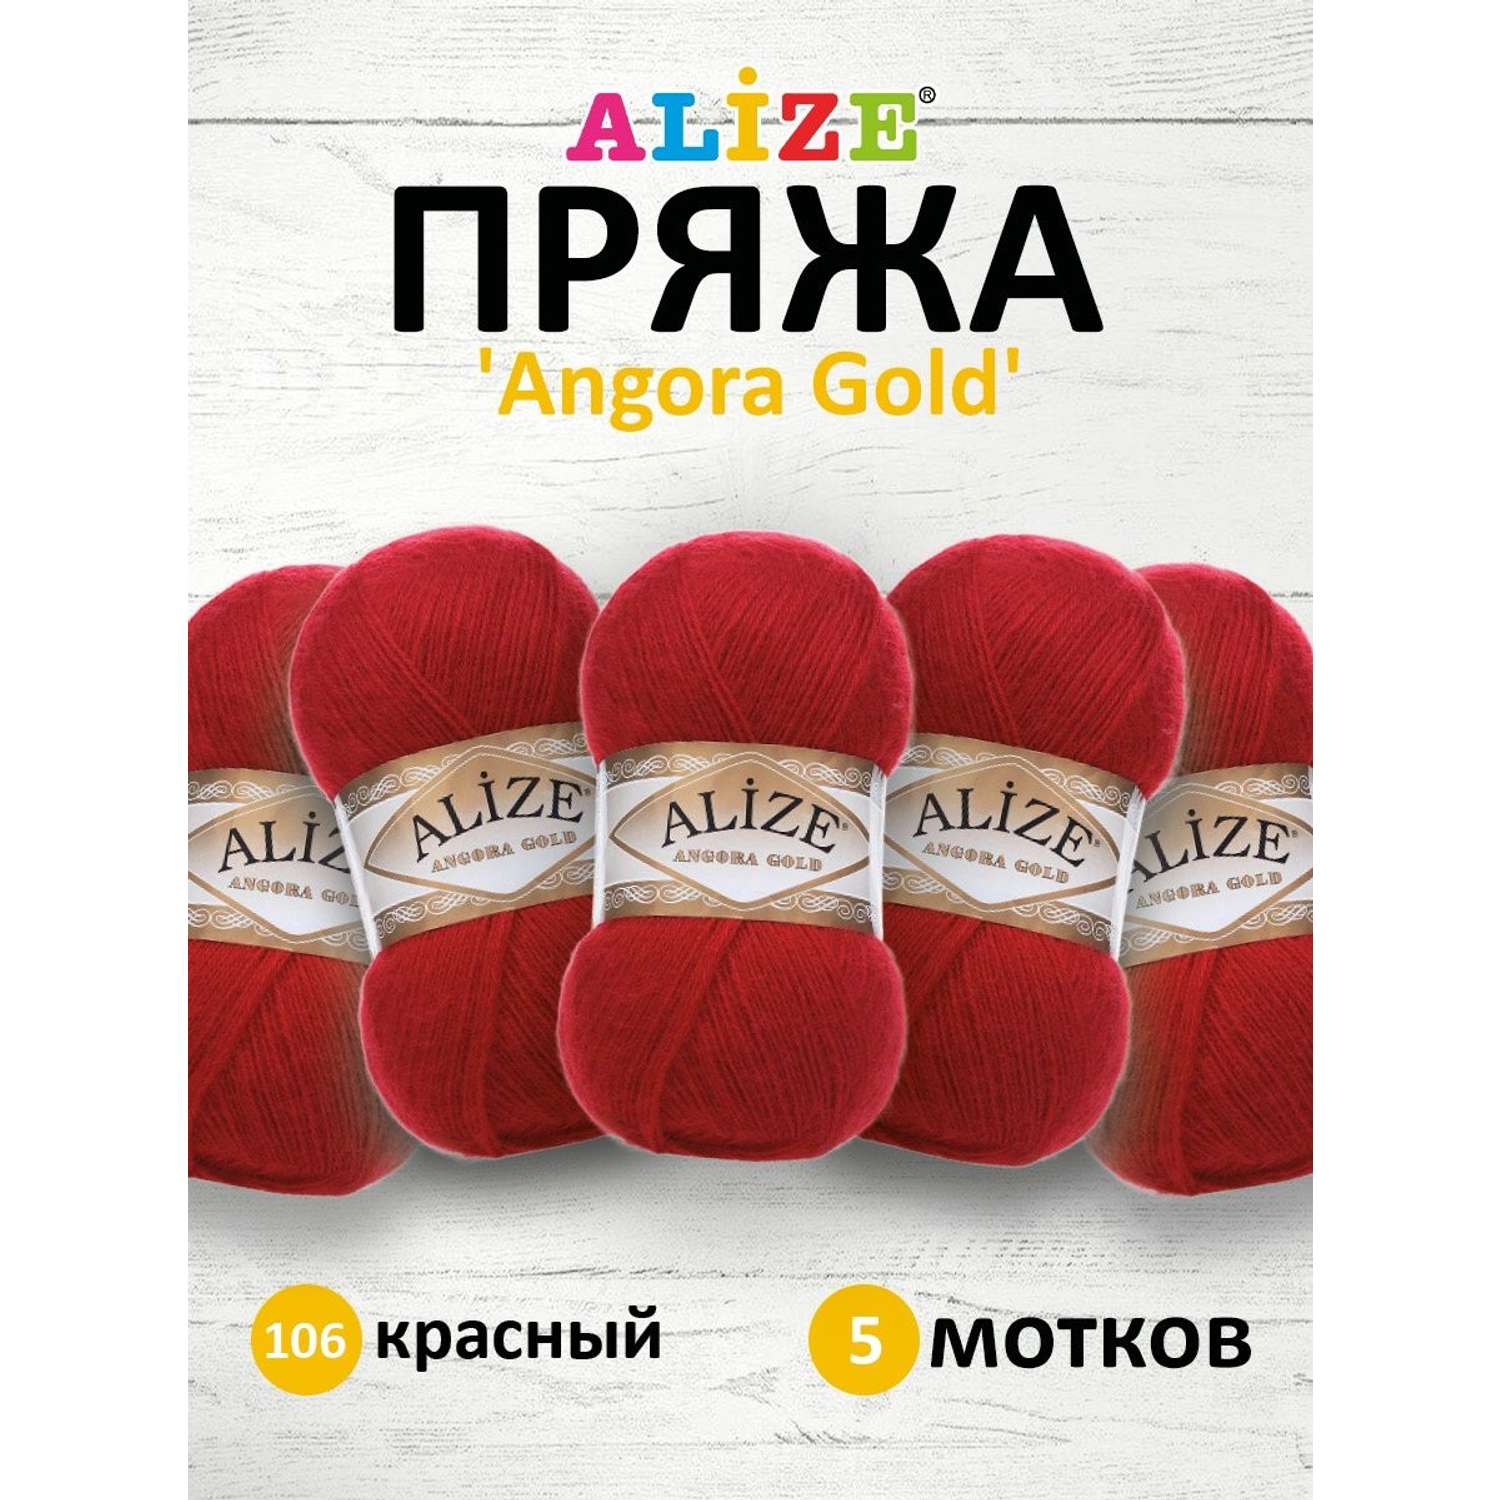 Пряжа Alize мягкая теплая для шарфов кардиганов Angora Gold 100 гр 550 м 5 мотков 106 красный - фото 1